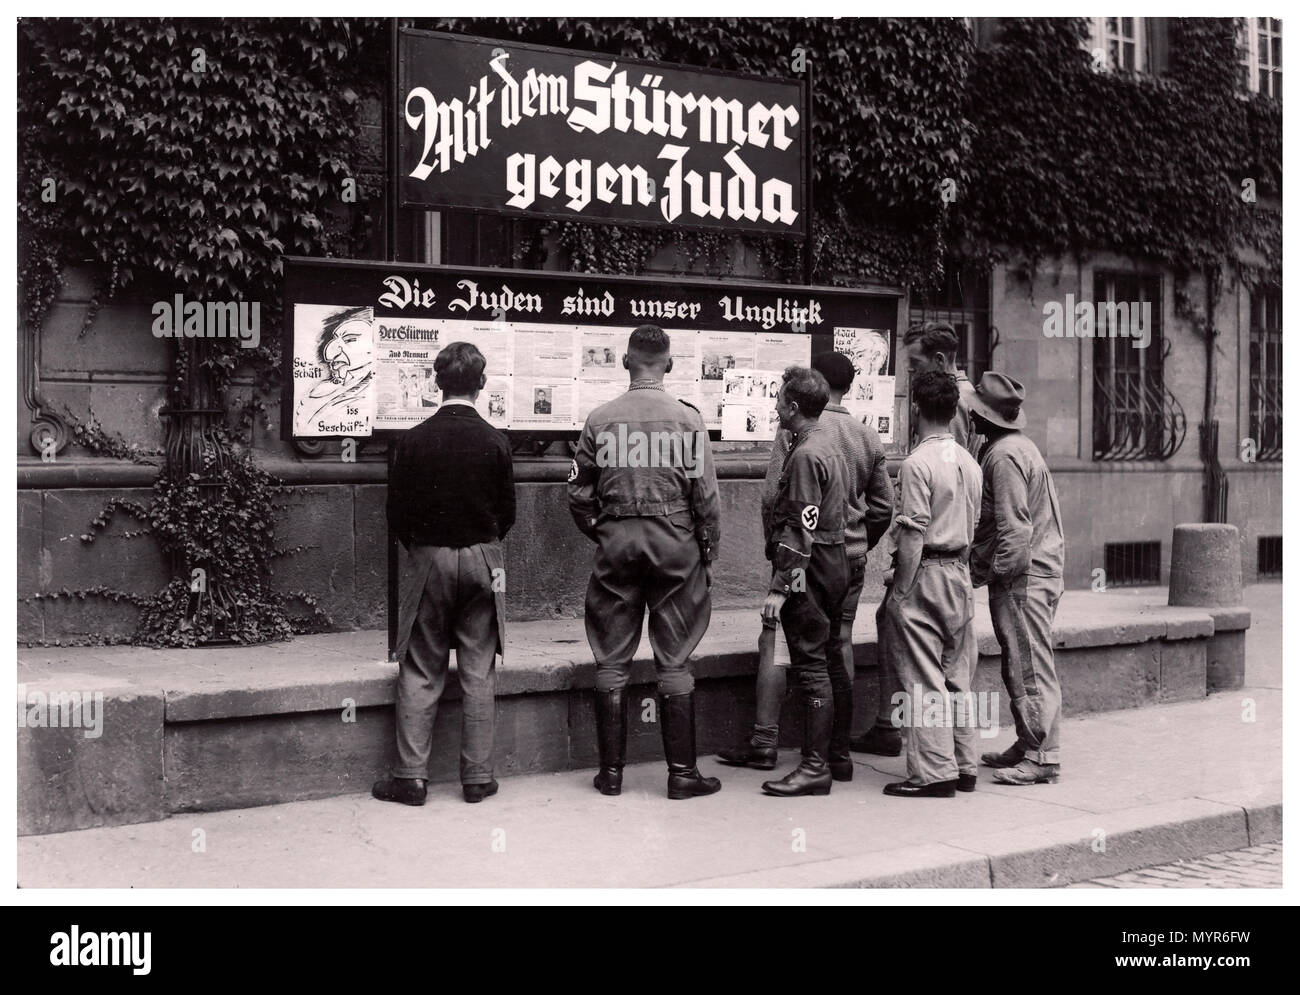 Die Nazi-Deutschland-Propagandazeitung des Jahres 1930 antisemitisch der Stürmer (Der Angreifer) Wird auf der Straße mit NSDAP-Mitgliedern und A veröffentlicht Bunte dissolute Gruppe von deutschen Männern, die die rassistische Hetzkrümmung lesen Schlagzeile, die liest "die Juden sind unser Unglück" Stadt Worms Deutschland 1935 Stockfoto